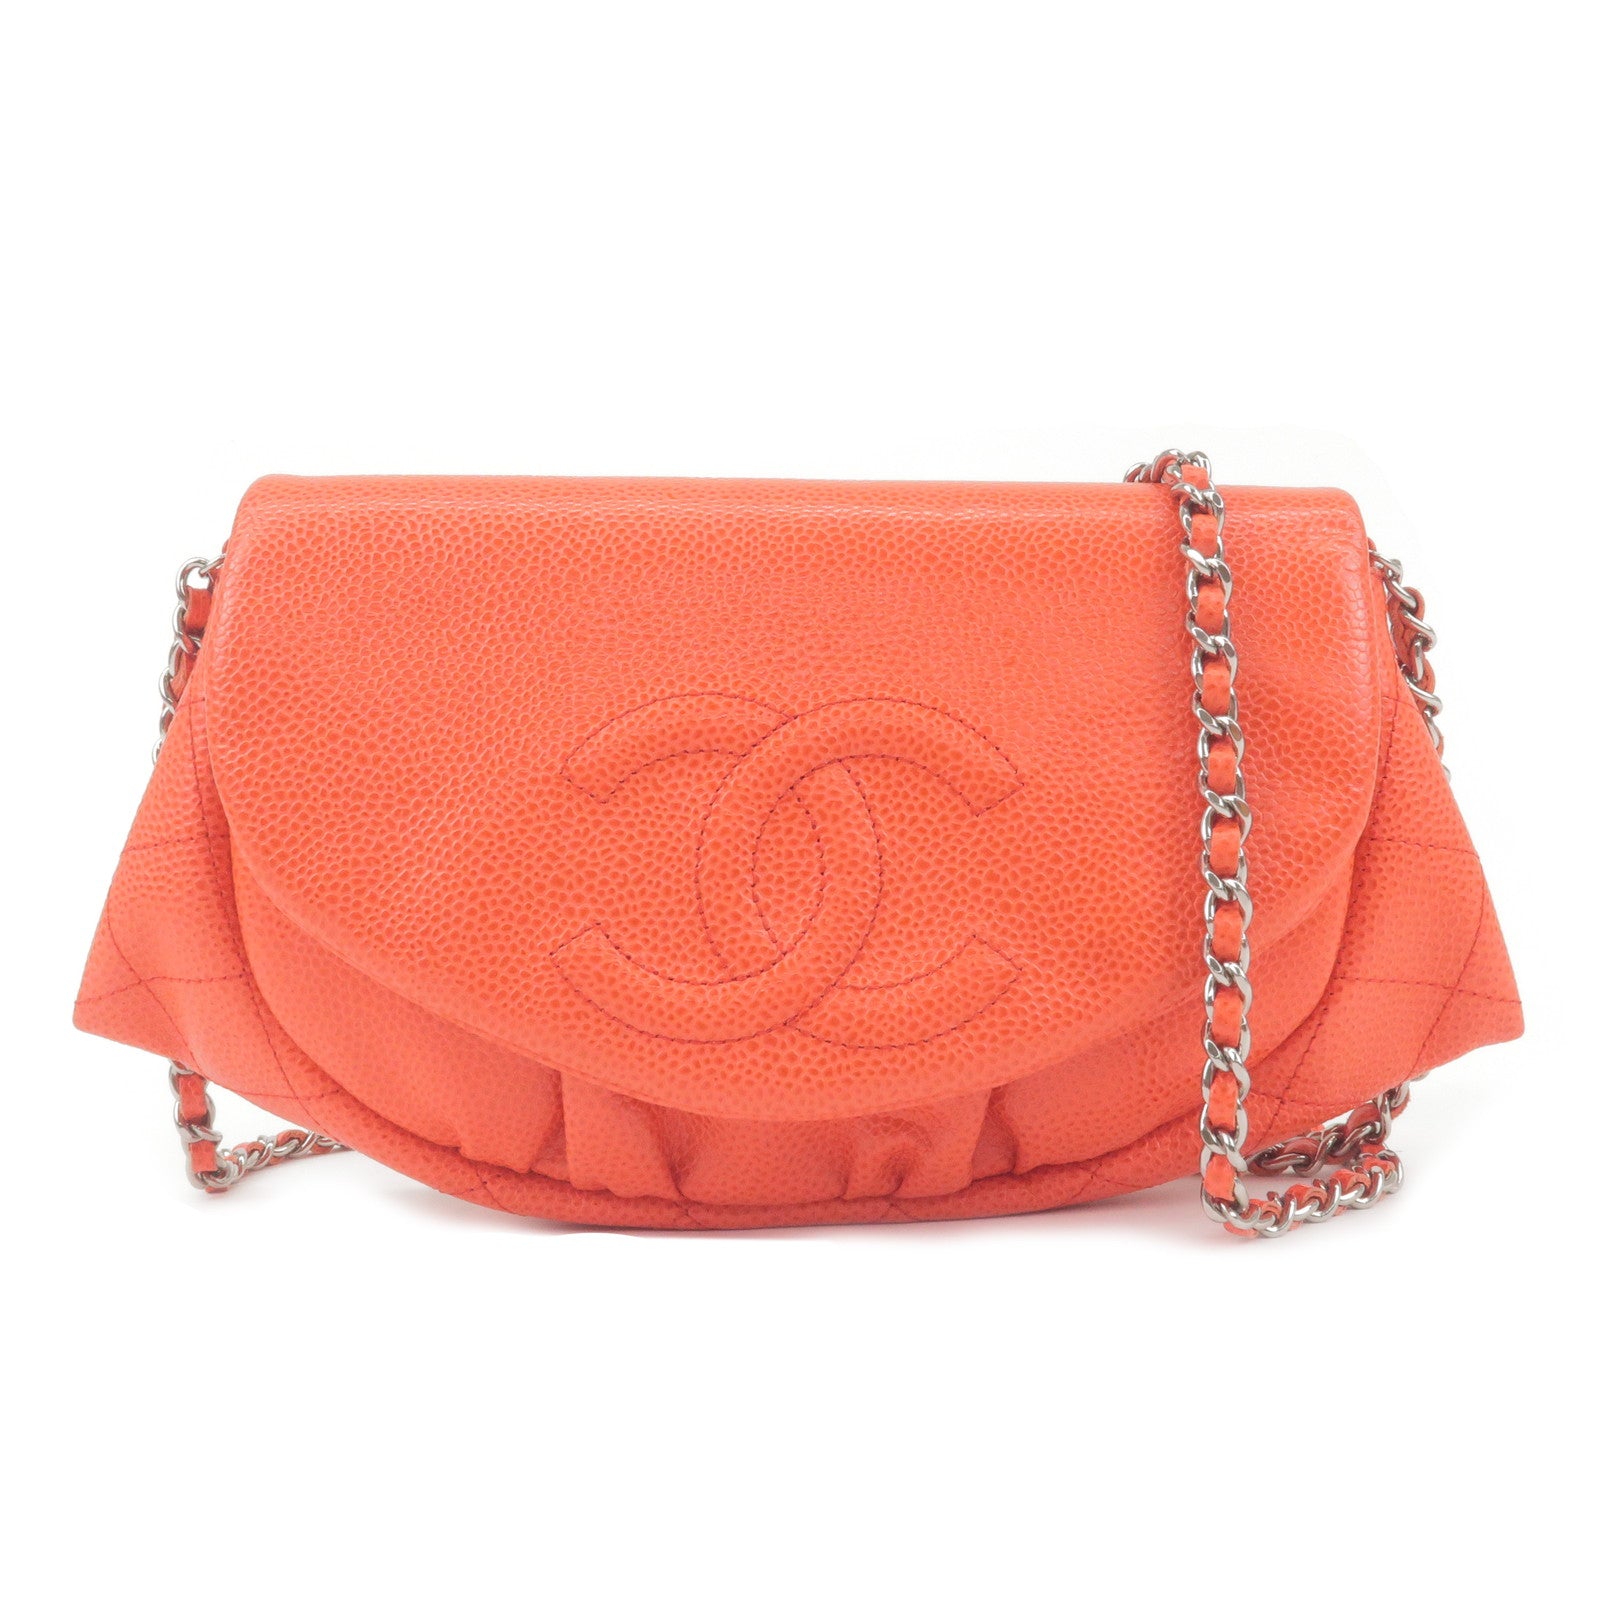 Chanel Blue Lambskin Flap Bag Features : Light - Depop